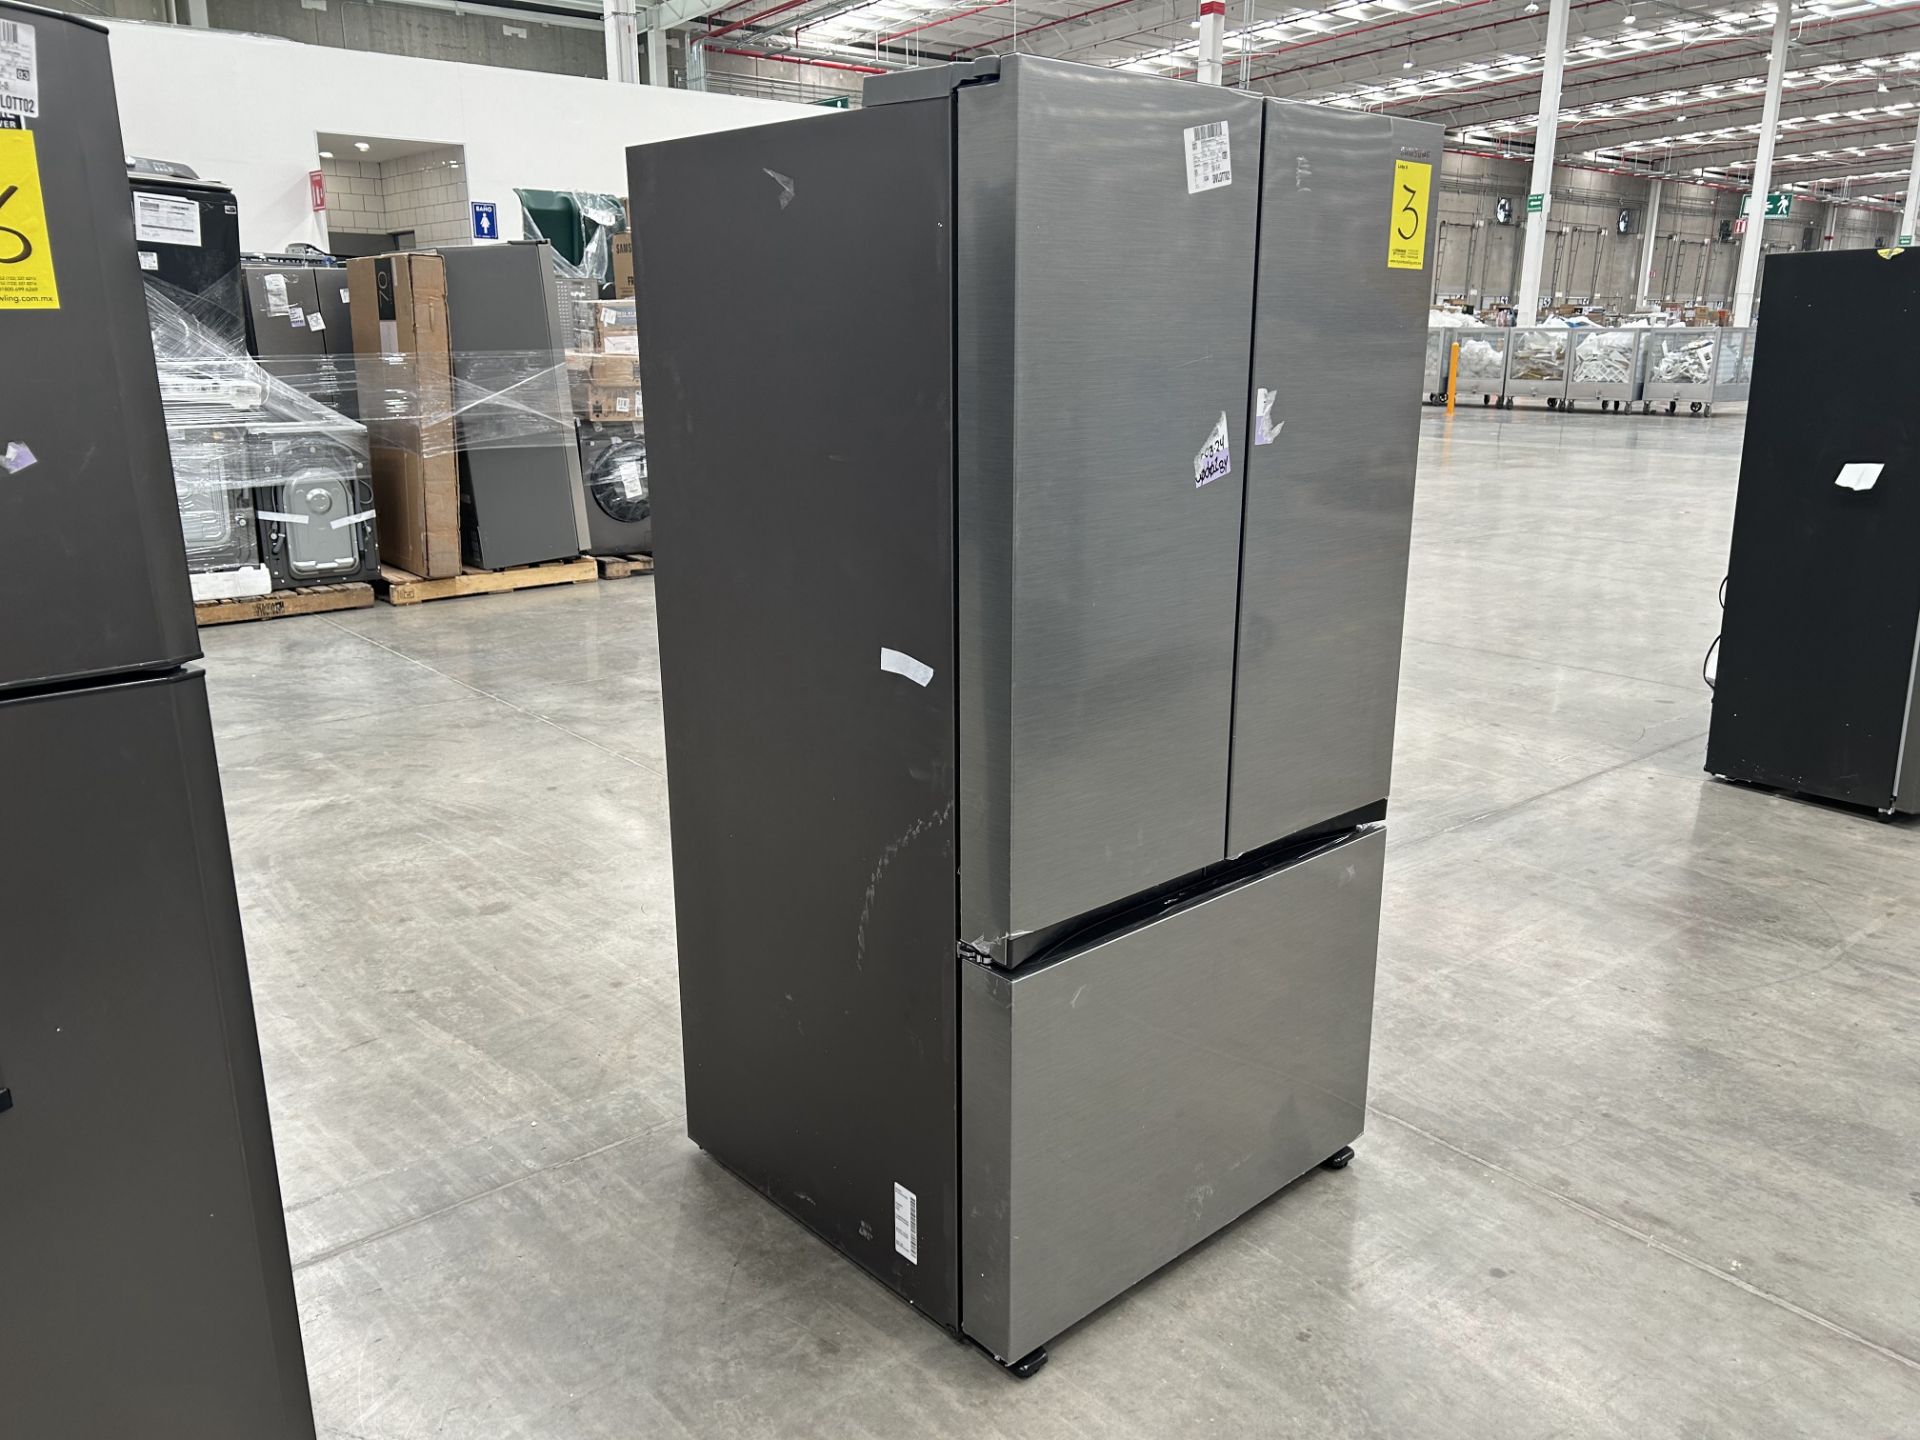 1 refrigerador Marca SAMSUNG, Modelo FR32CG5A10S9EM, Serie 101490K, Color GRIS (No se asegura su fu - Image 5 of 6